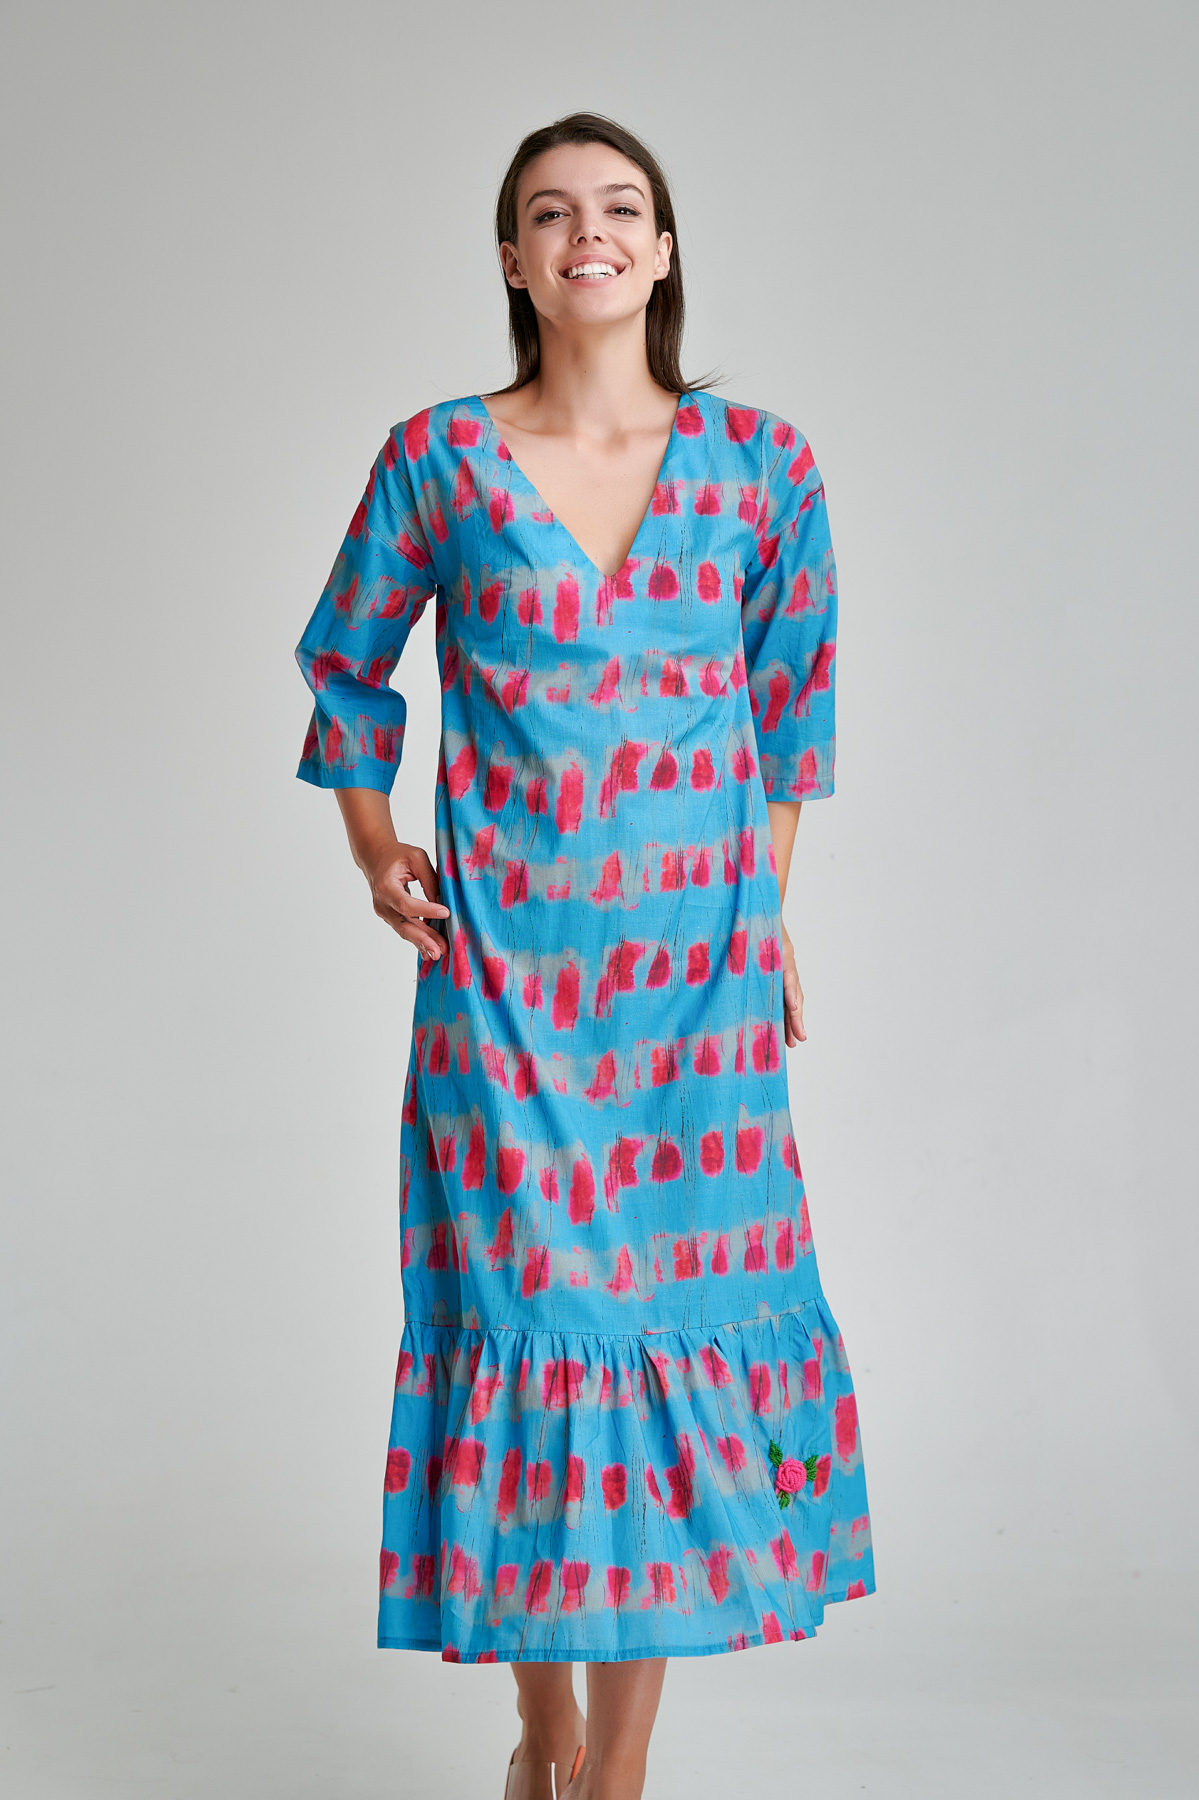 Rochie casual ALIS albastra de zi din poplin cu imprimeu. Materiale naturale, design unicat, cu broderie si aplicatii handmade